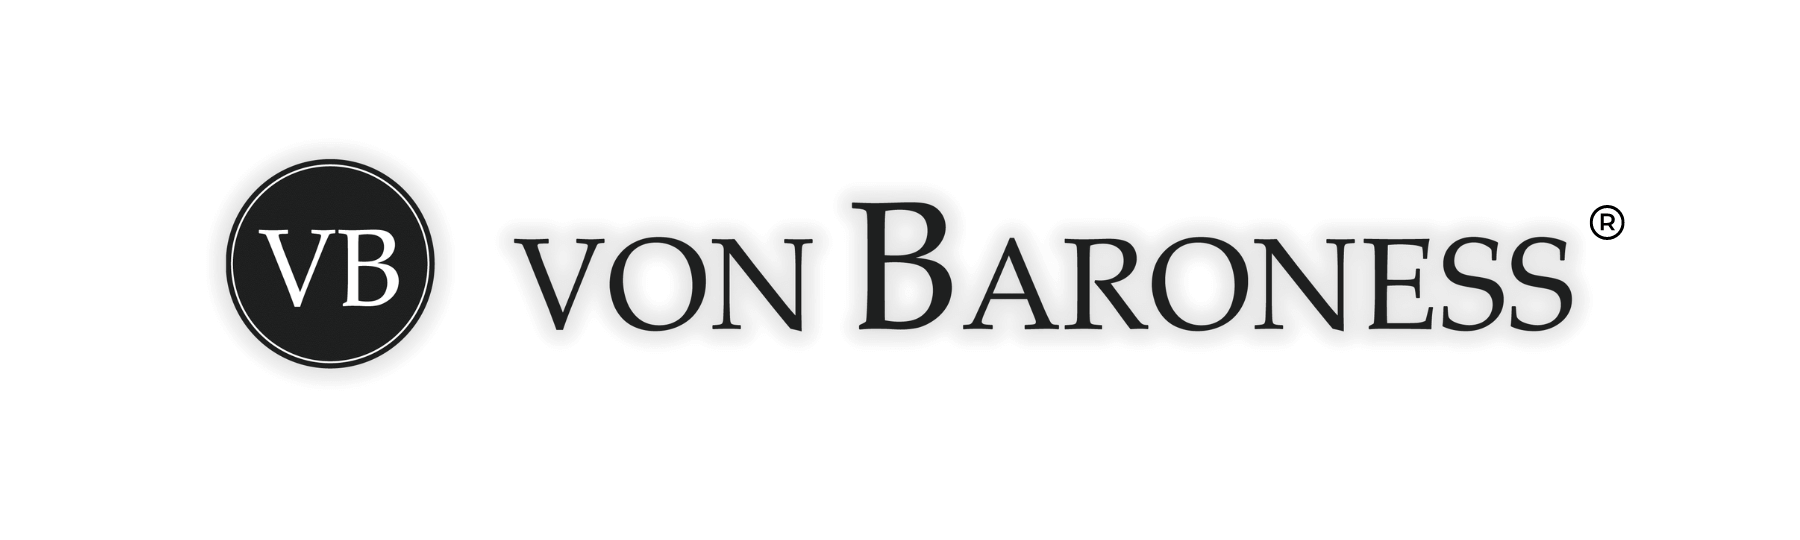 logo von baroness